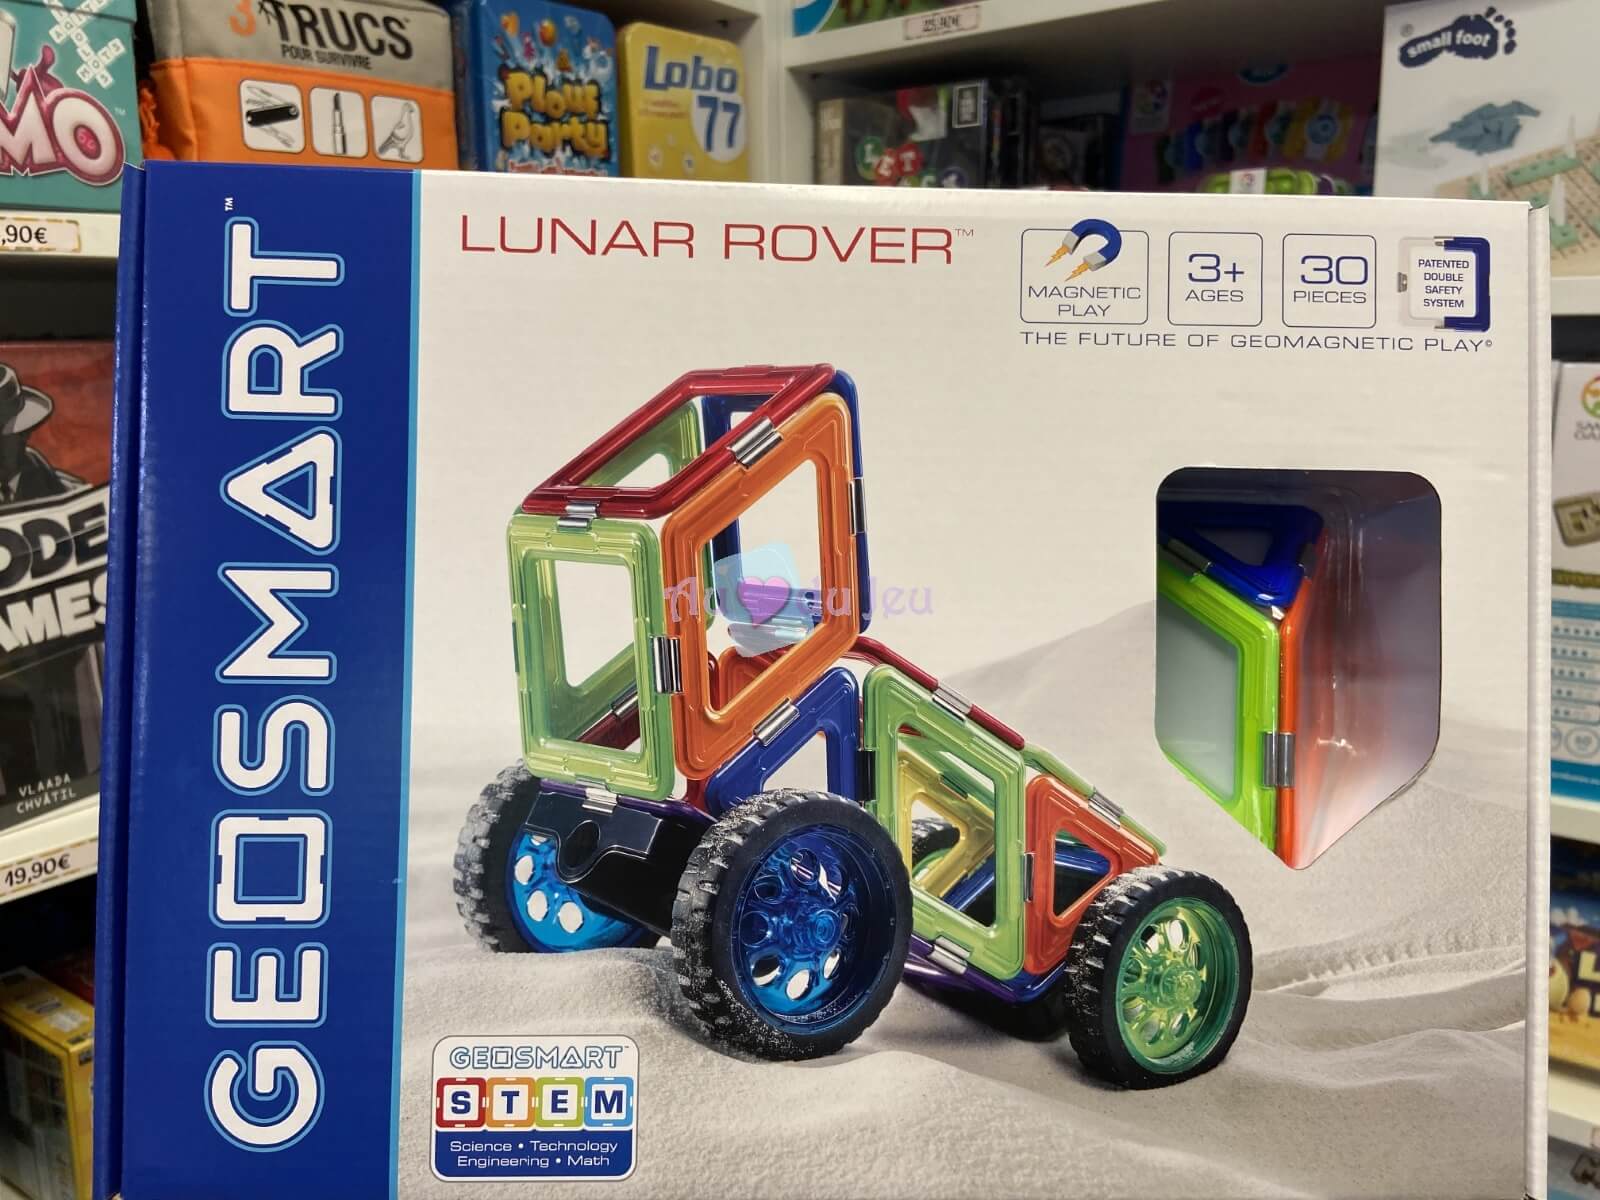 Geosmart - Lunar Rover Smart Games